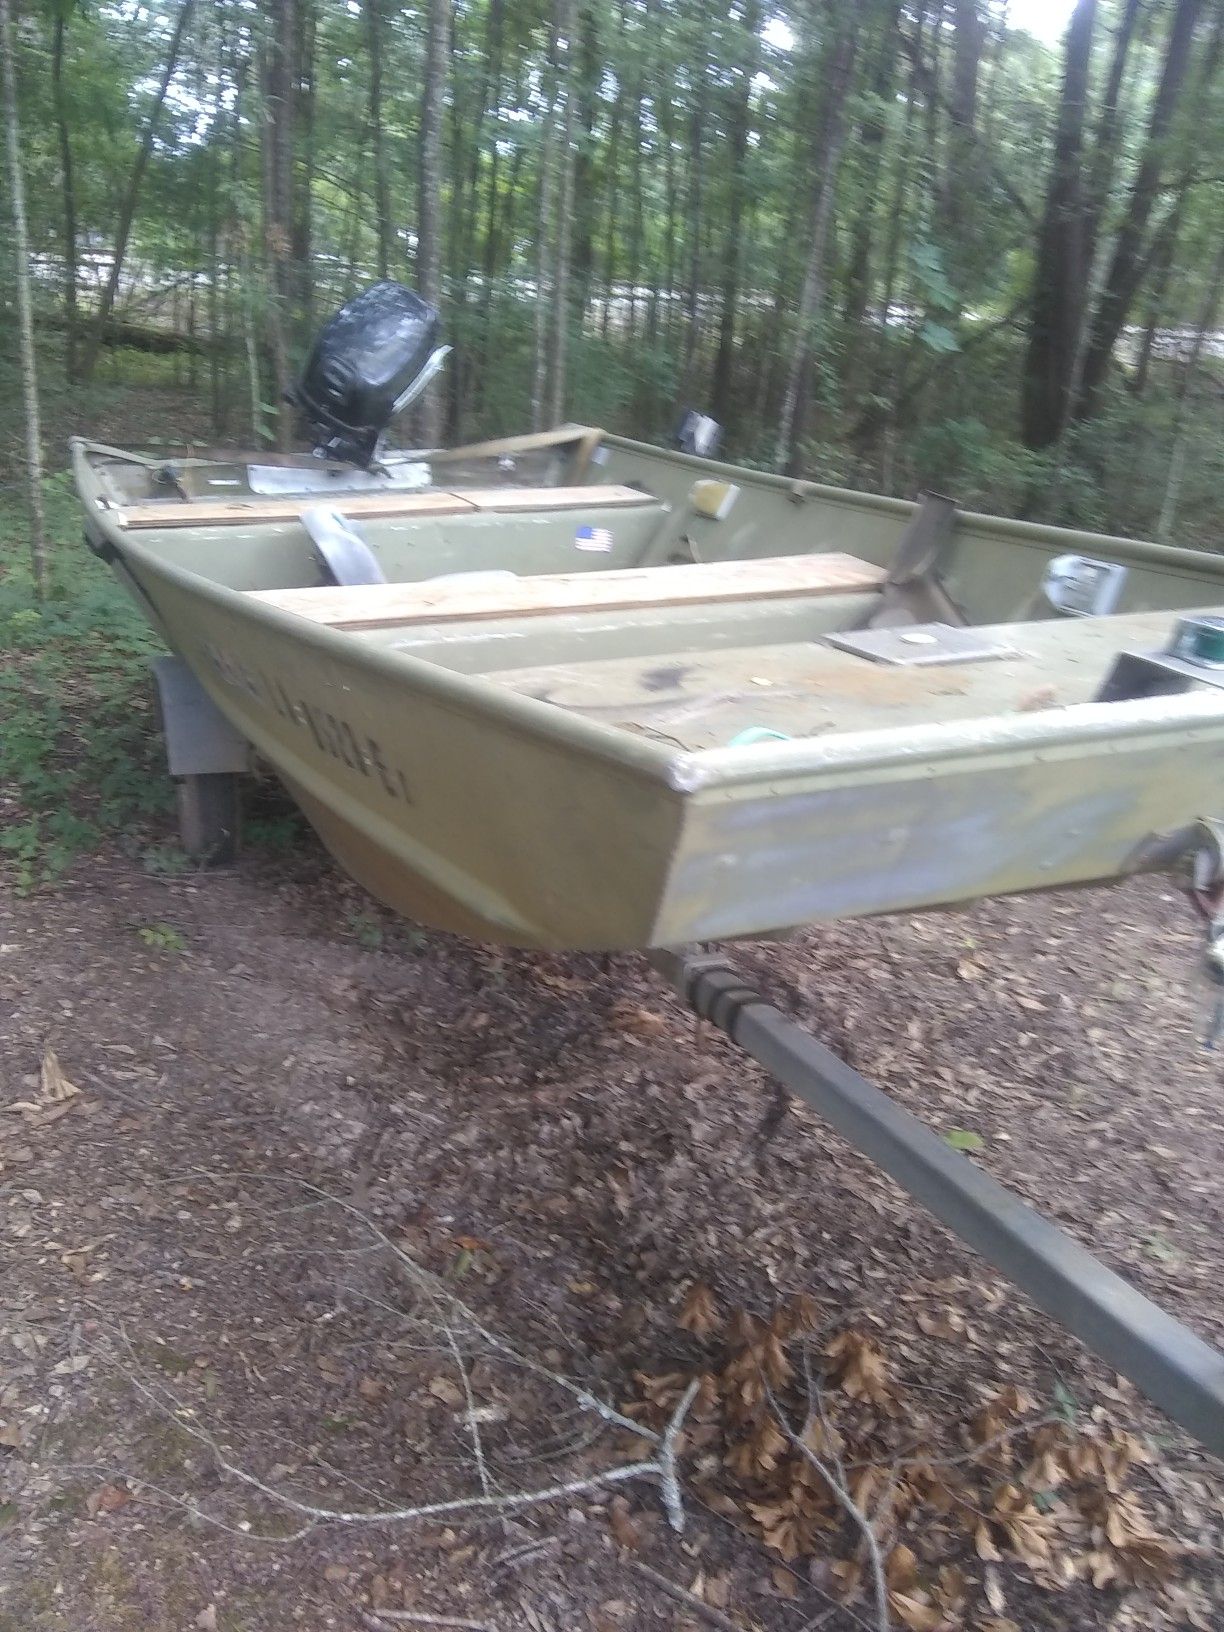 Aluminum boat